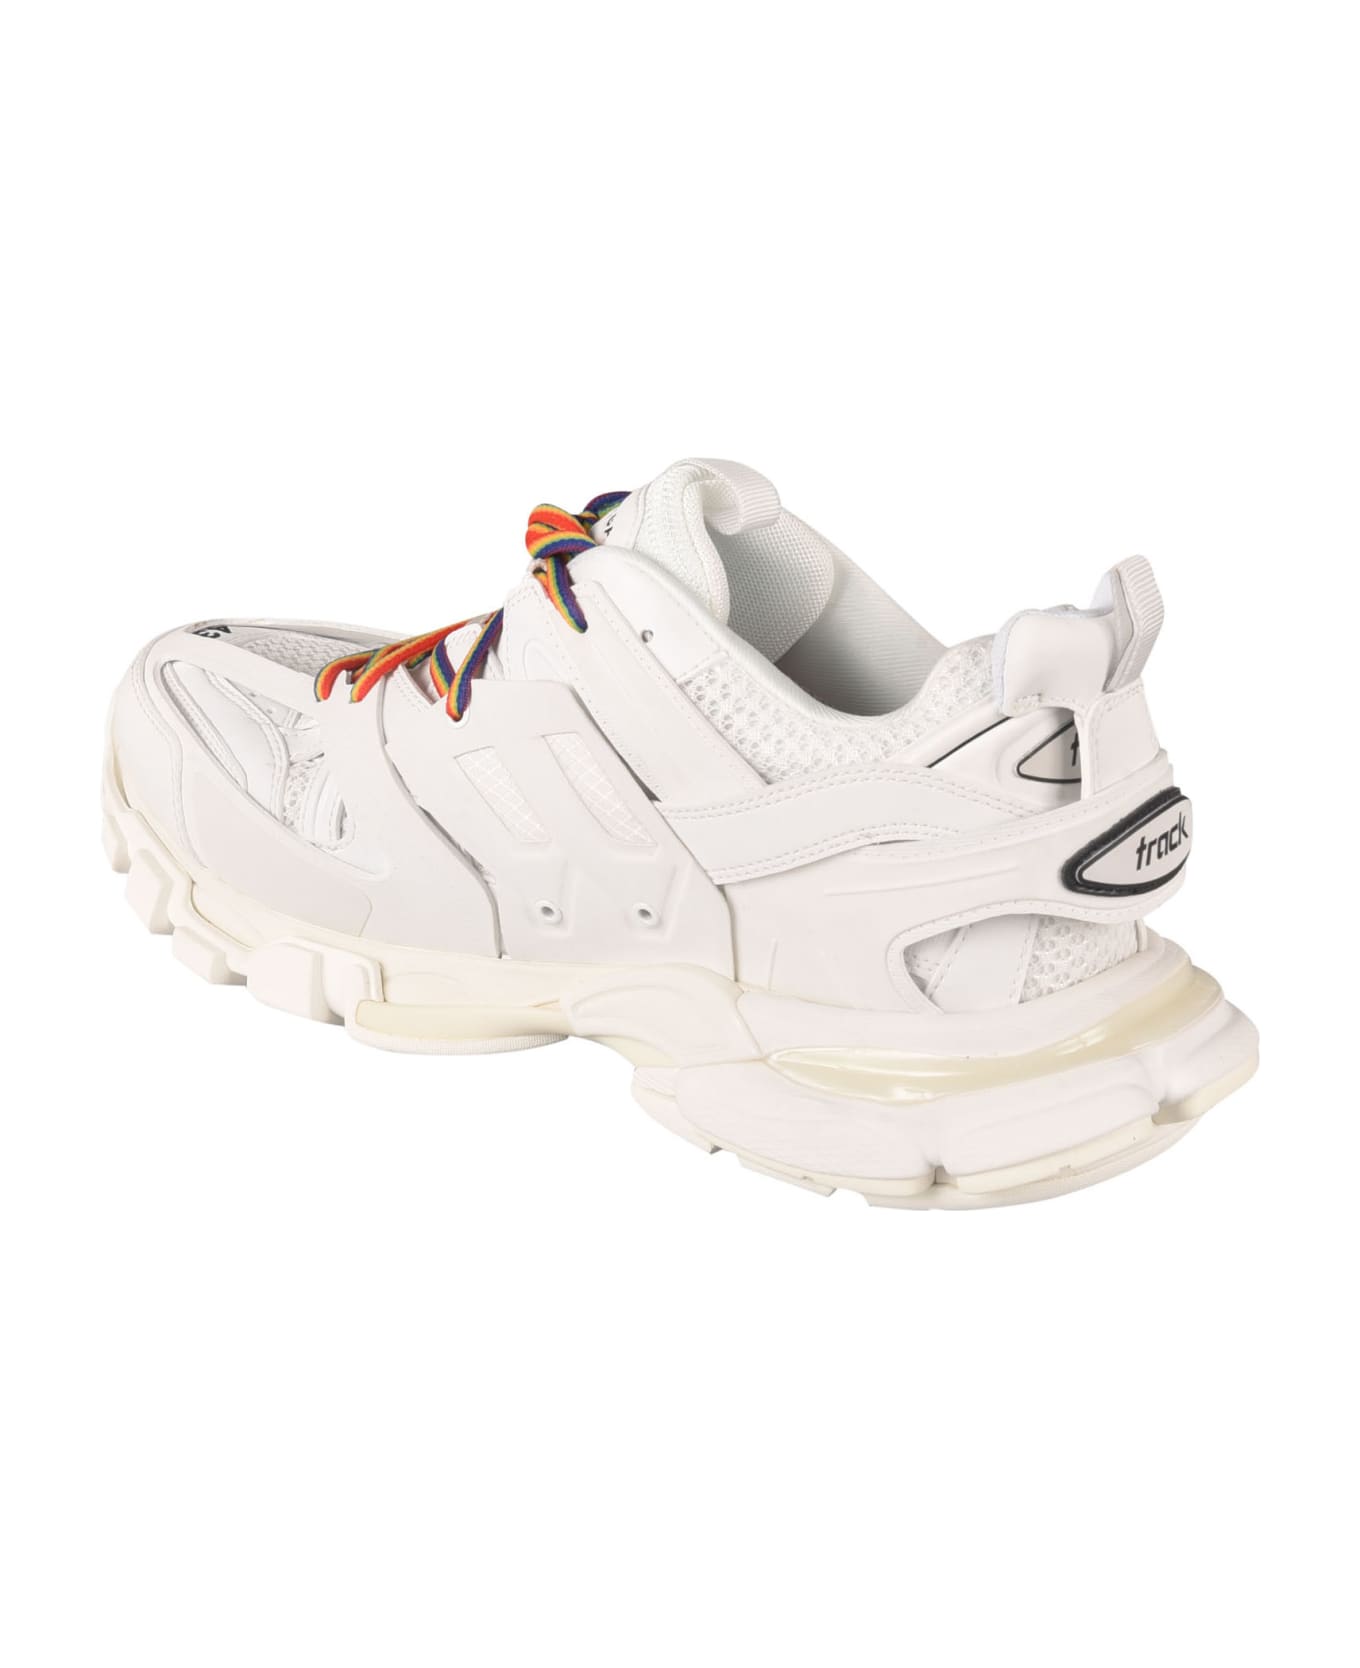 Balenciaga Track Rubber Sneakers - White/Multicolor